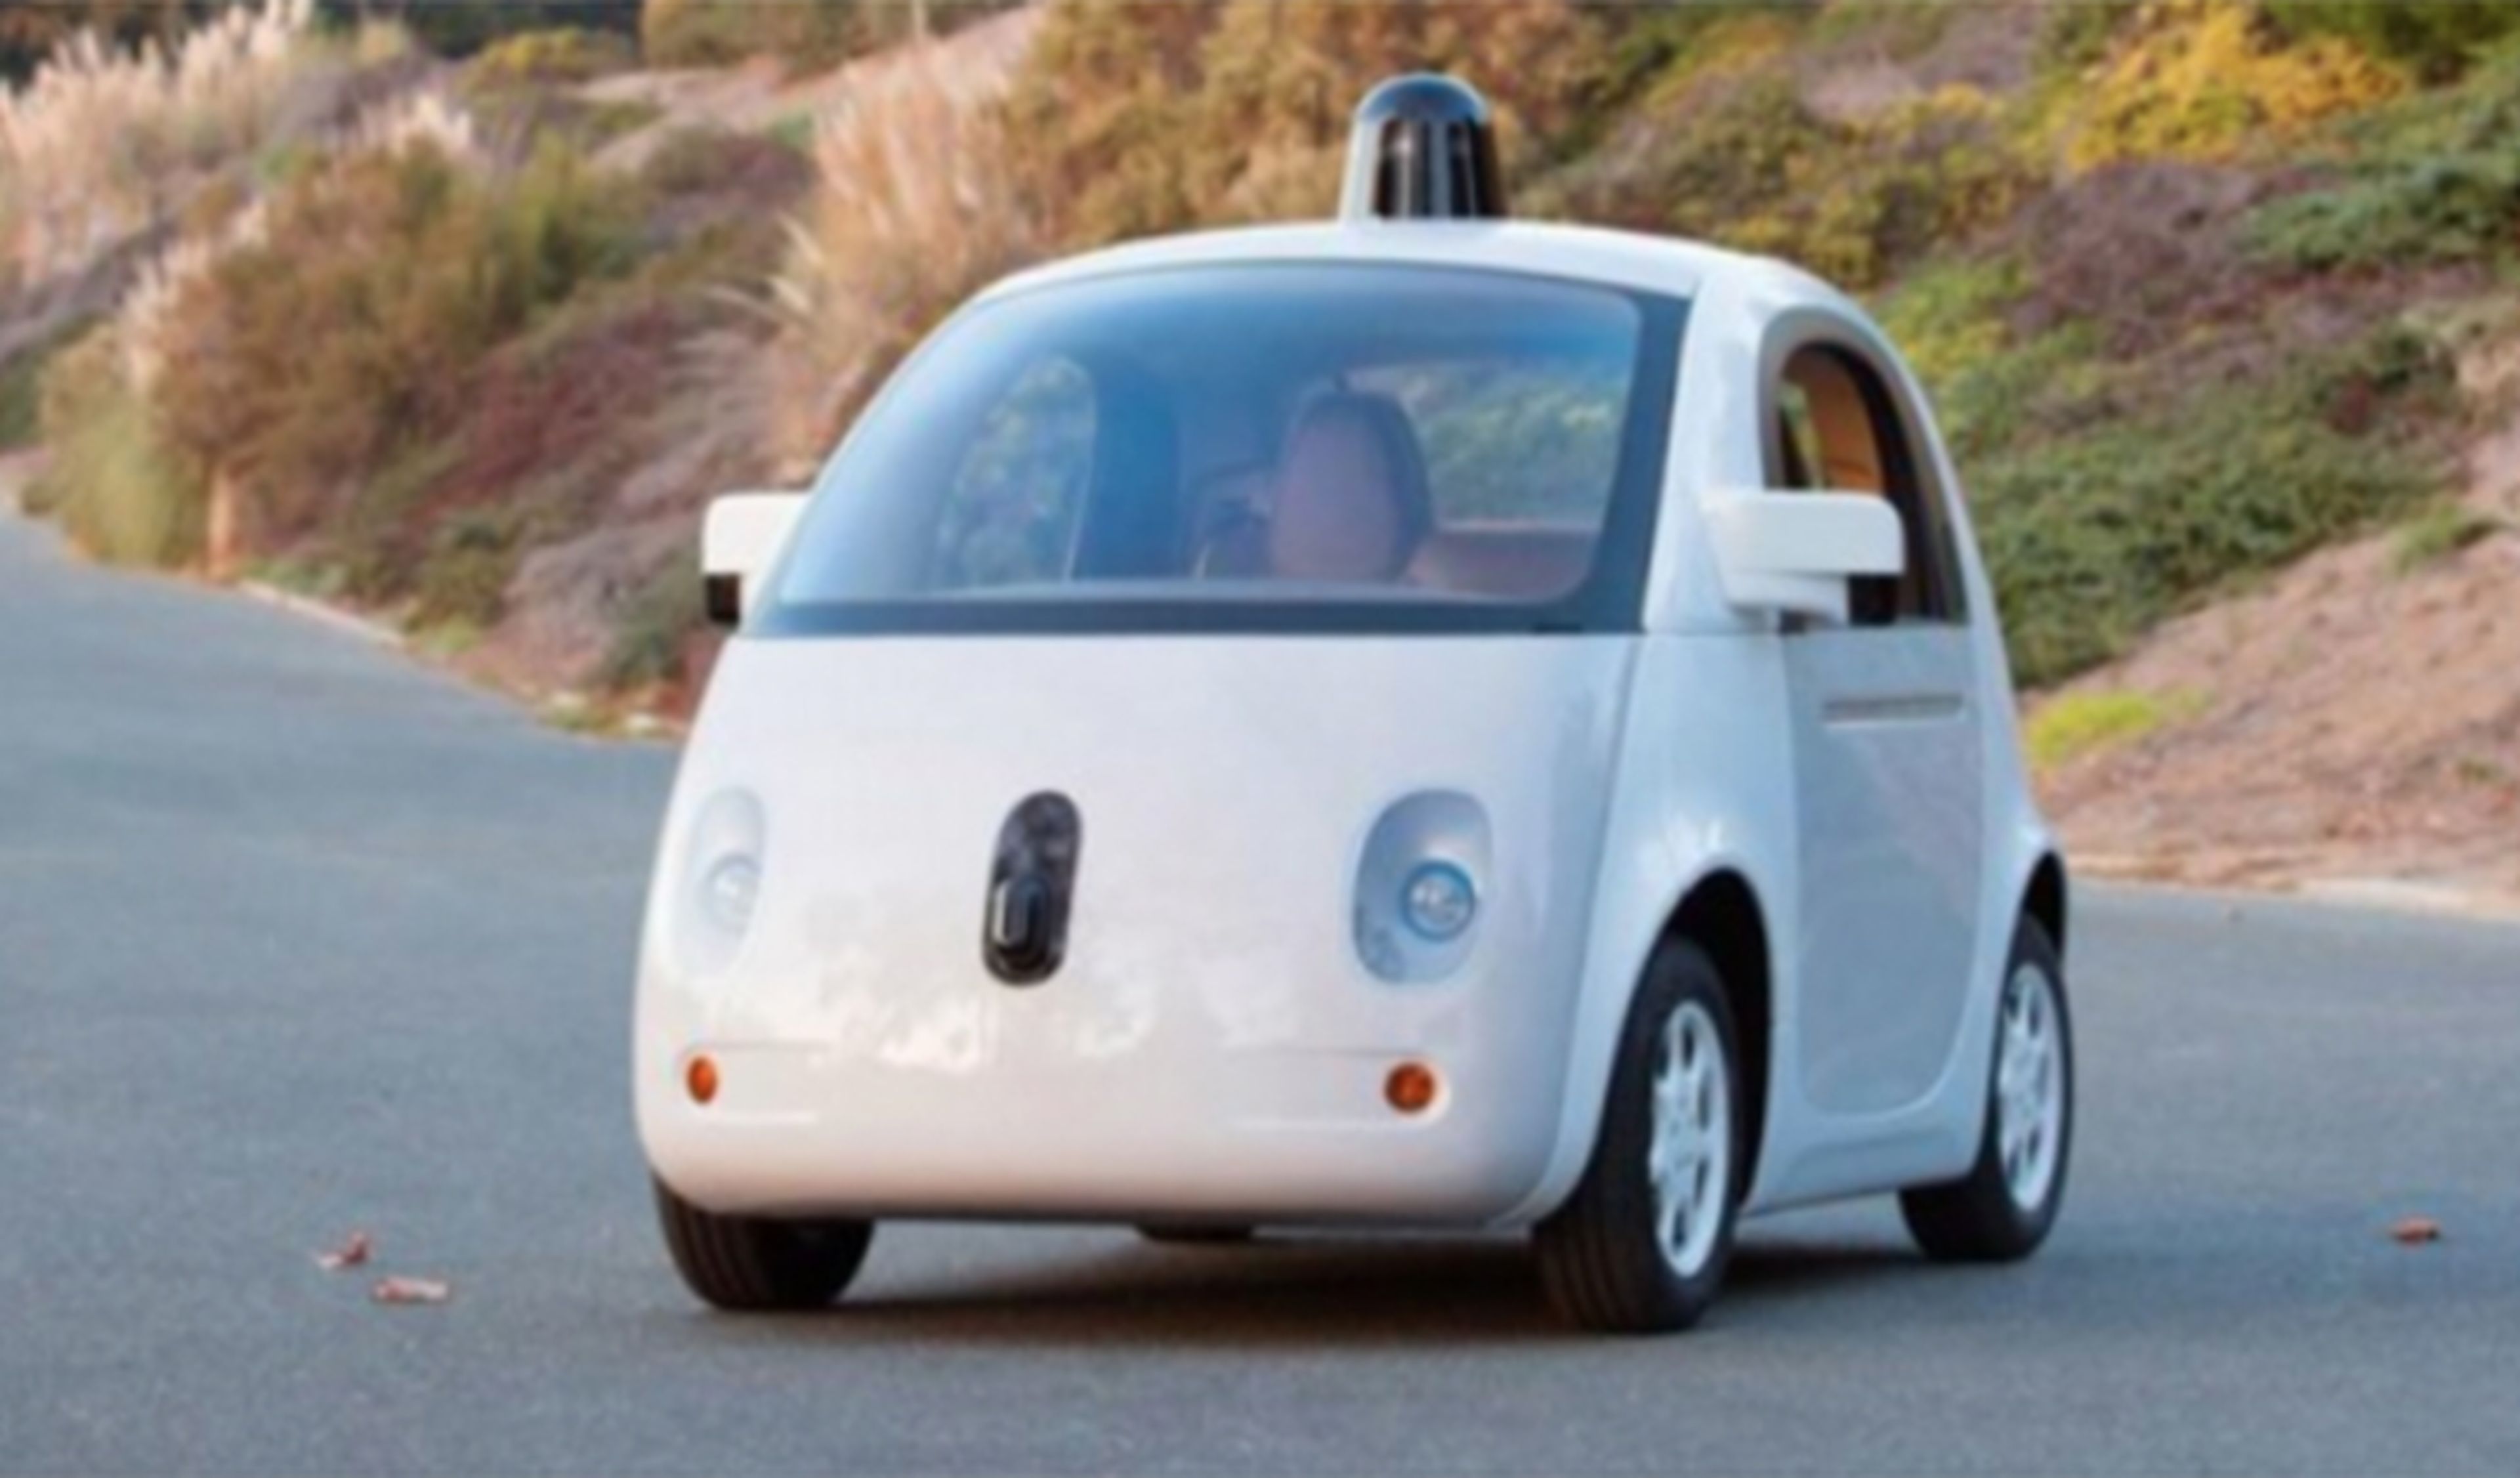 Google busca socios para fabricar su coche autónomo